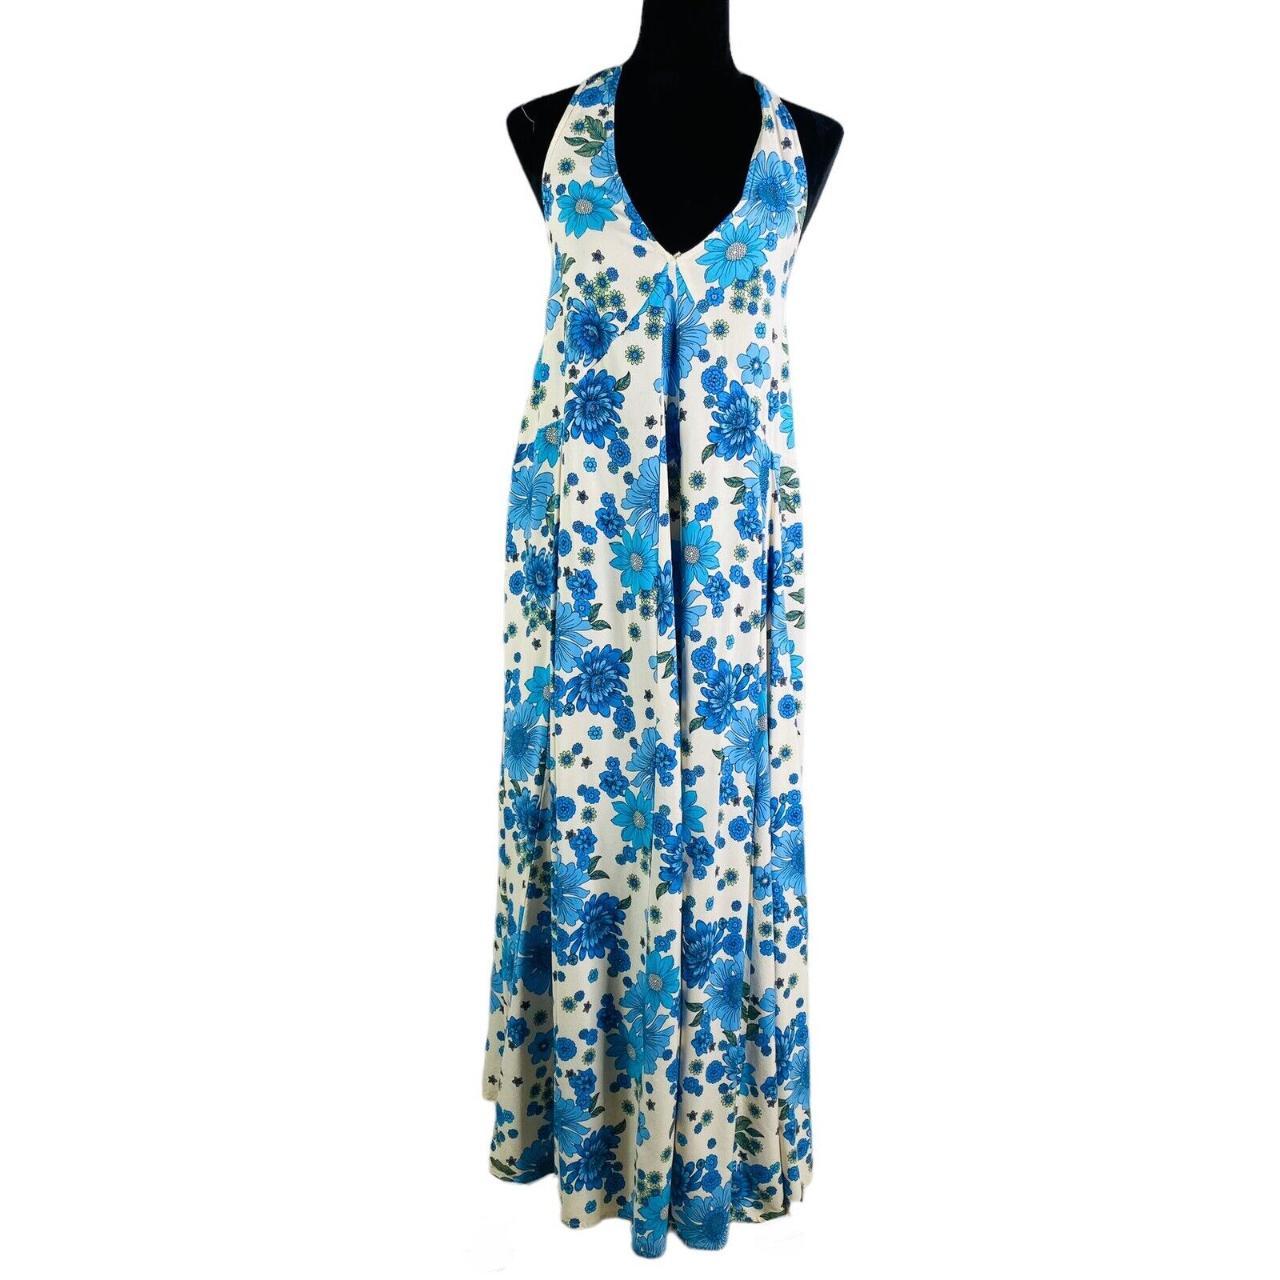 Aakaa Leah Halter Dress Blue Floral Maxi Dress Size... - Depop